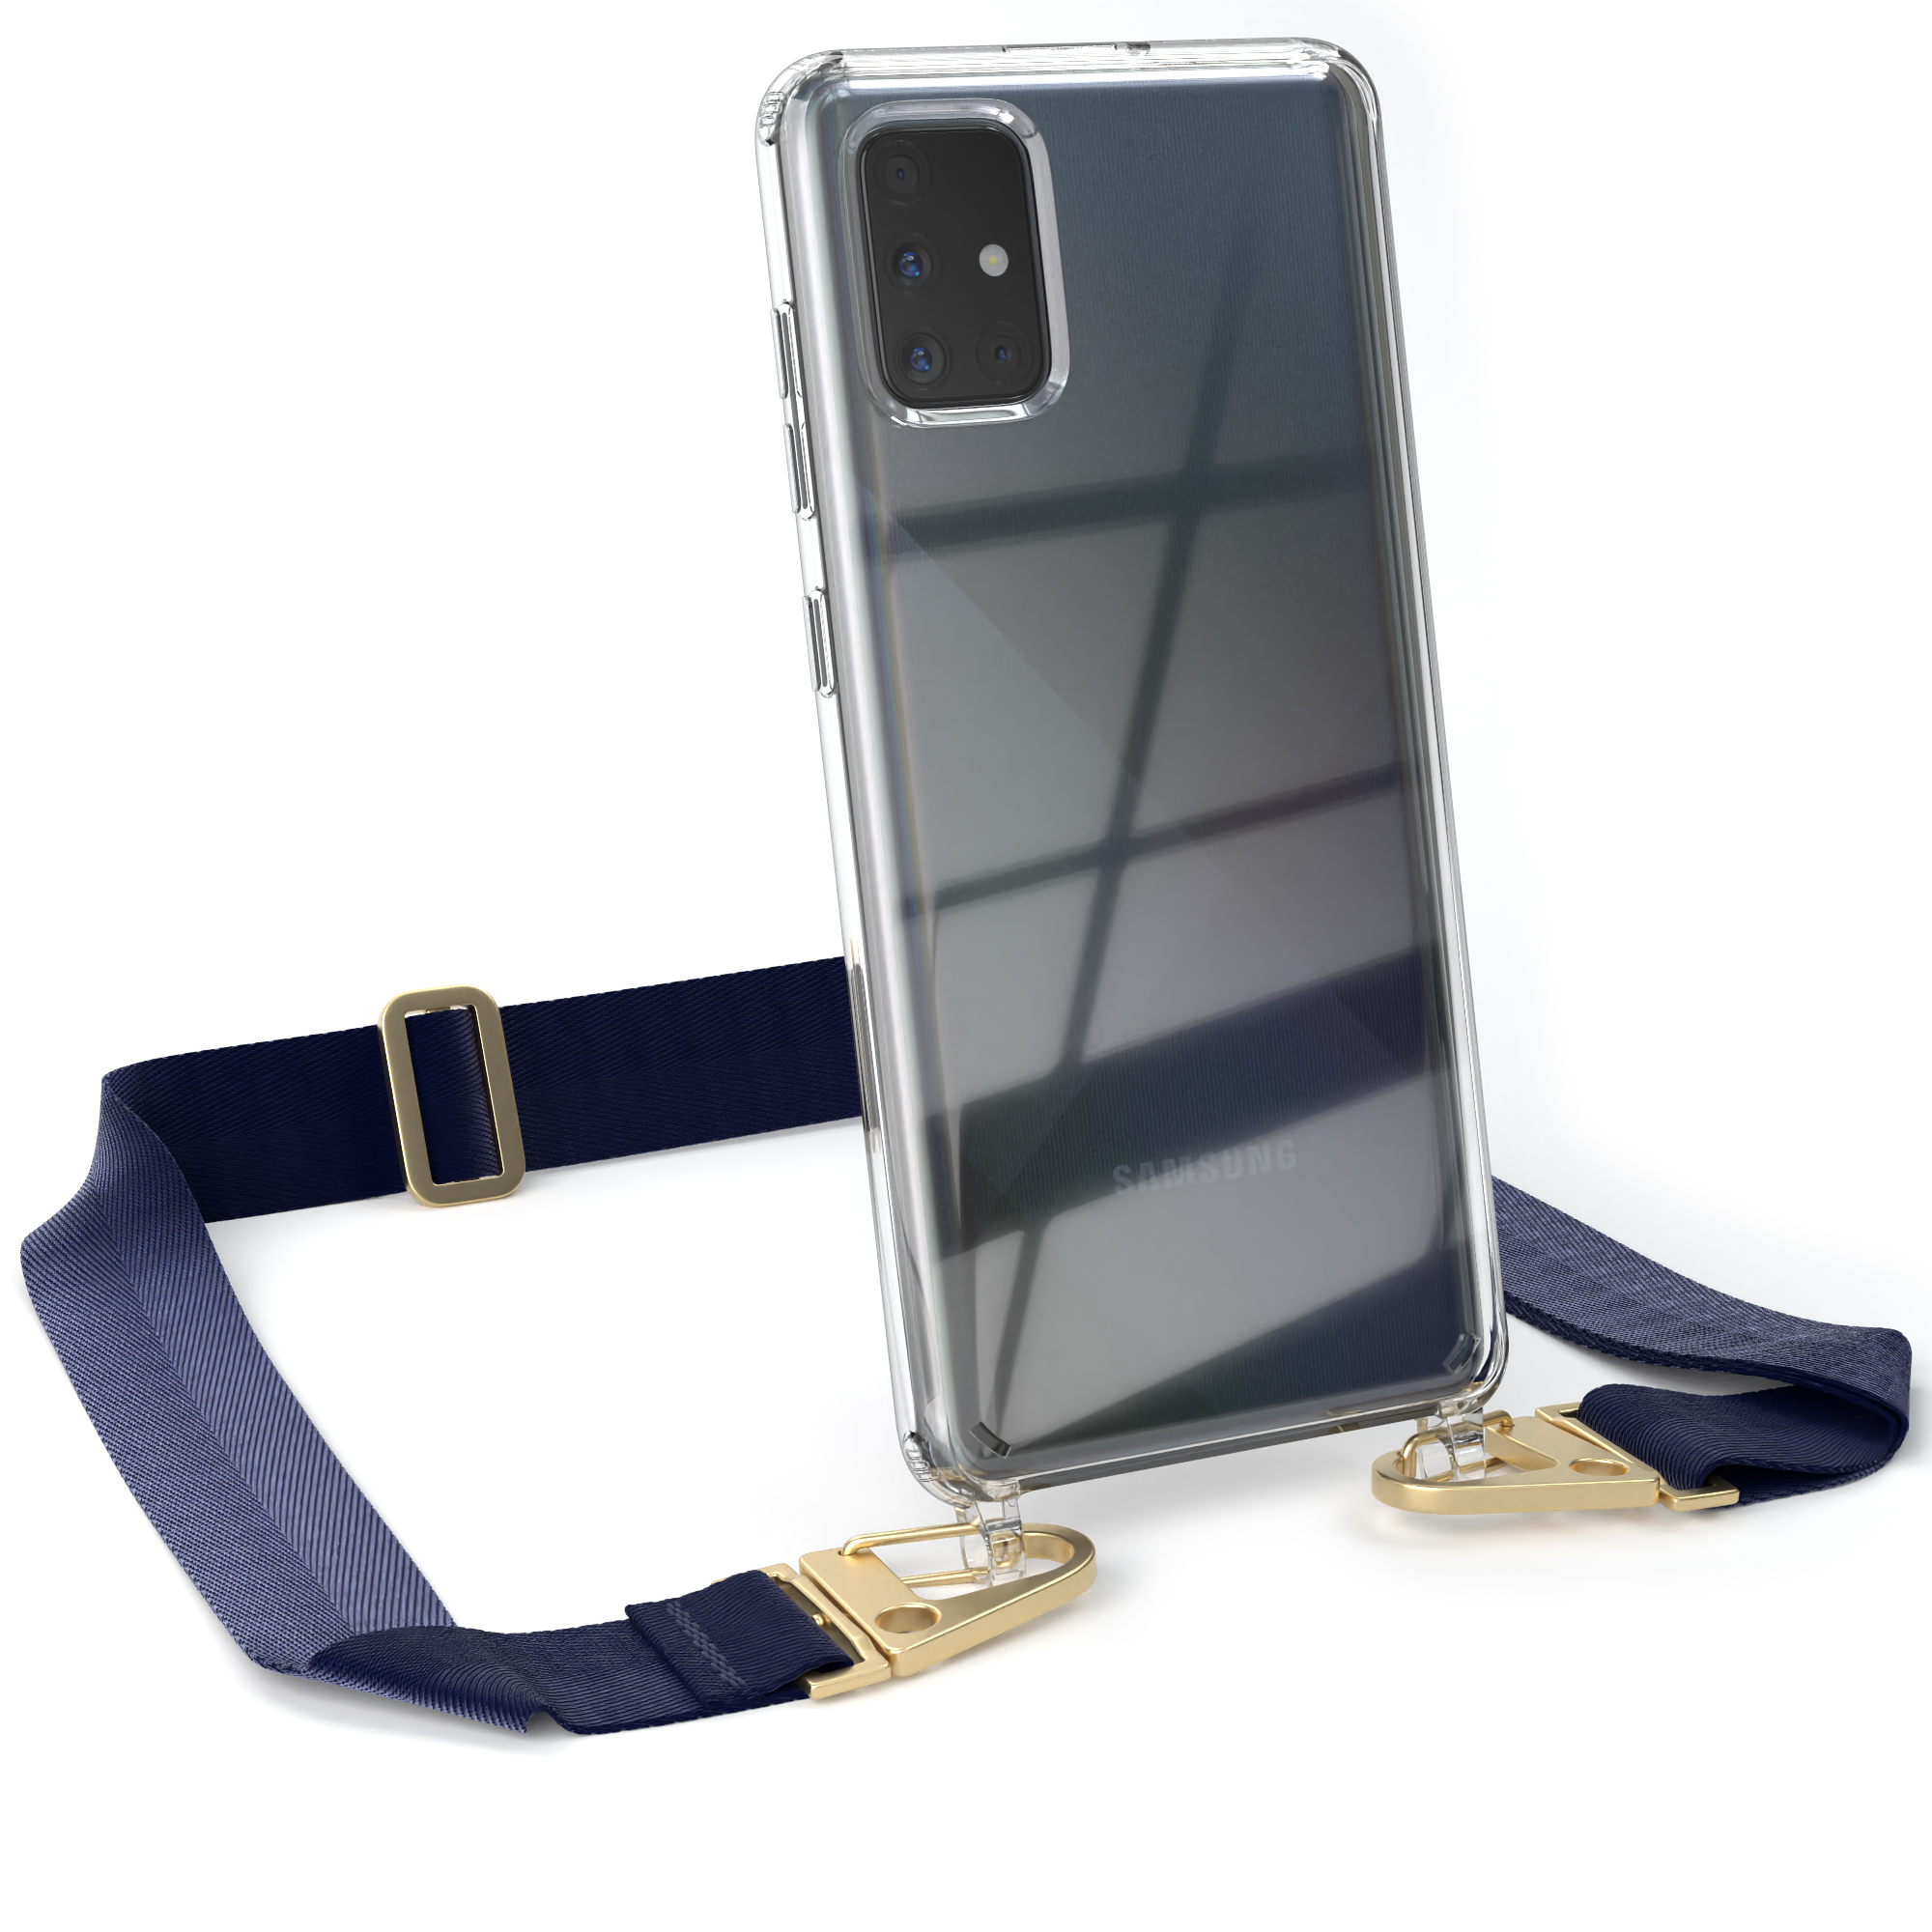 EAZY CASE Umhängetasche, Transparente Galaxy breiter A71, + Karabiner, / Samsung, Blau mit Dunkel Handyhülle Kordel Gold